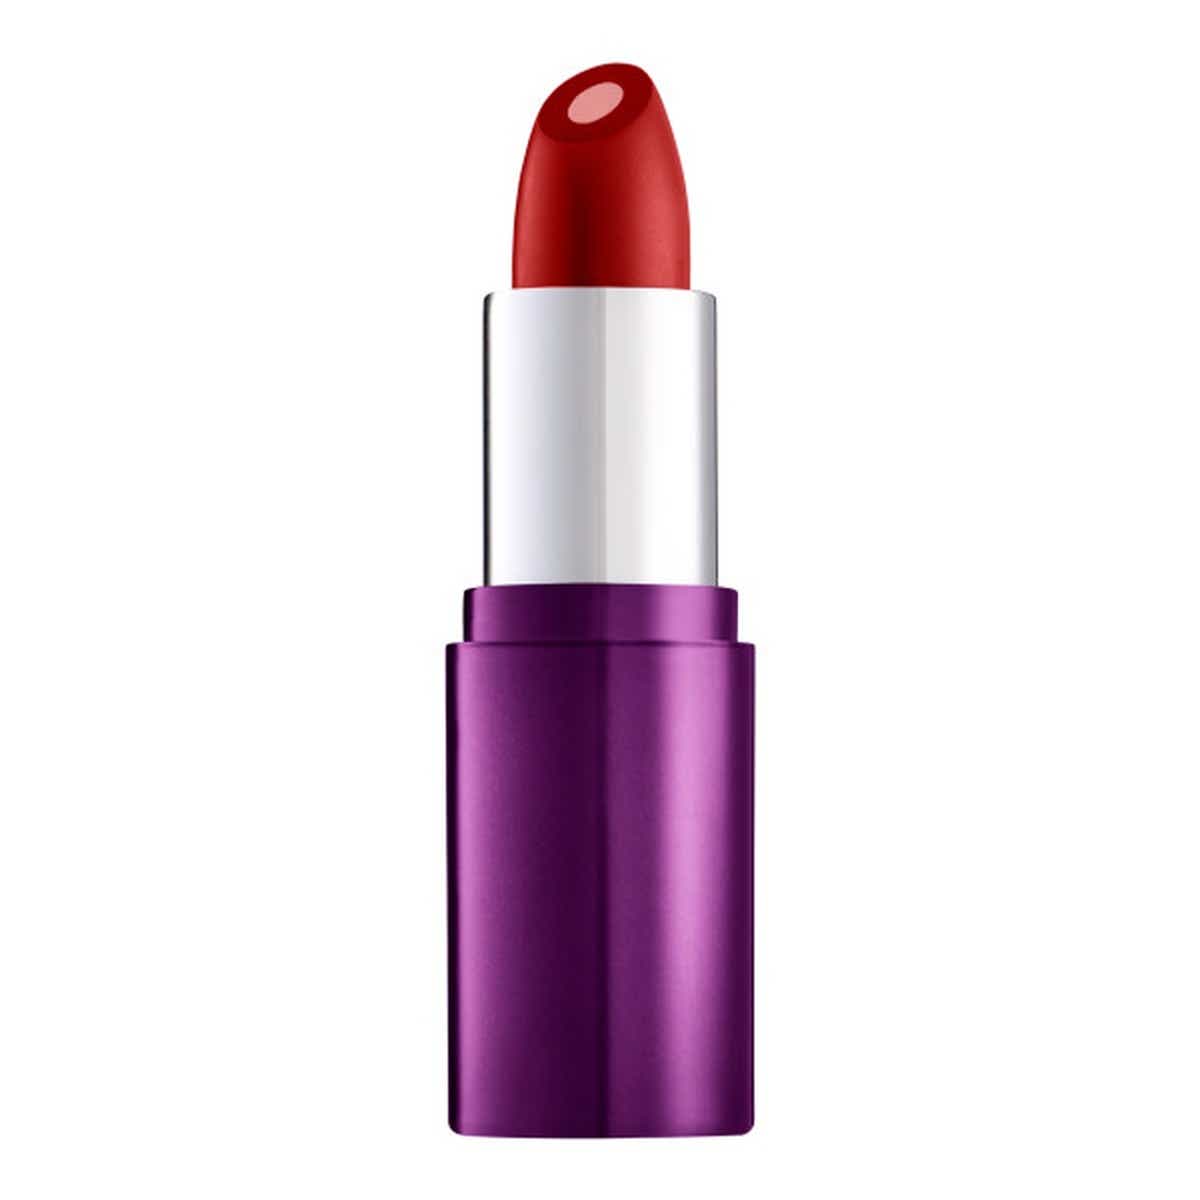 Lipstick: Liquid Lipstick, Matte Lipstick & More